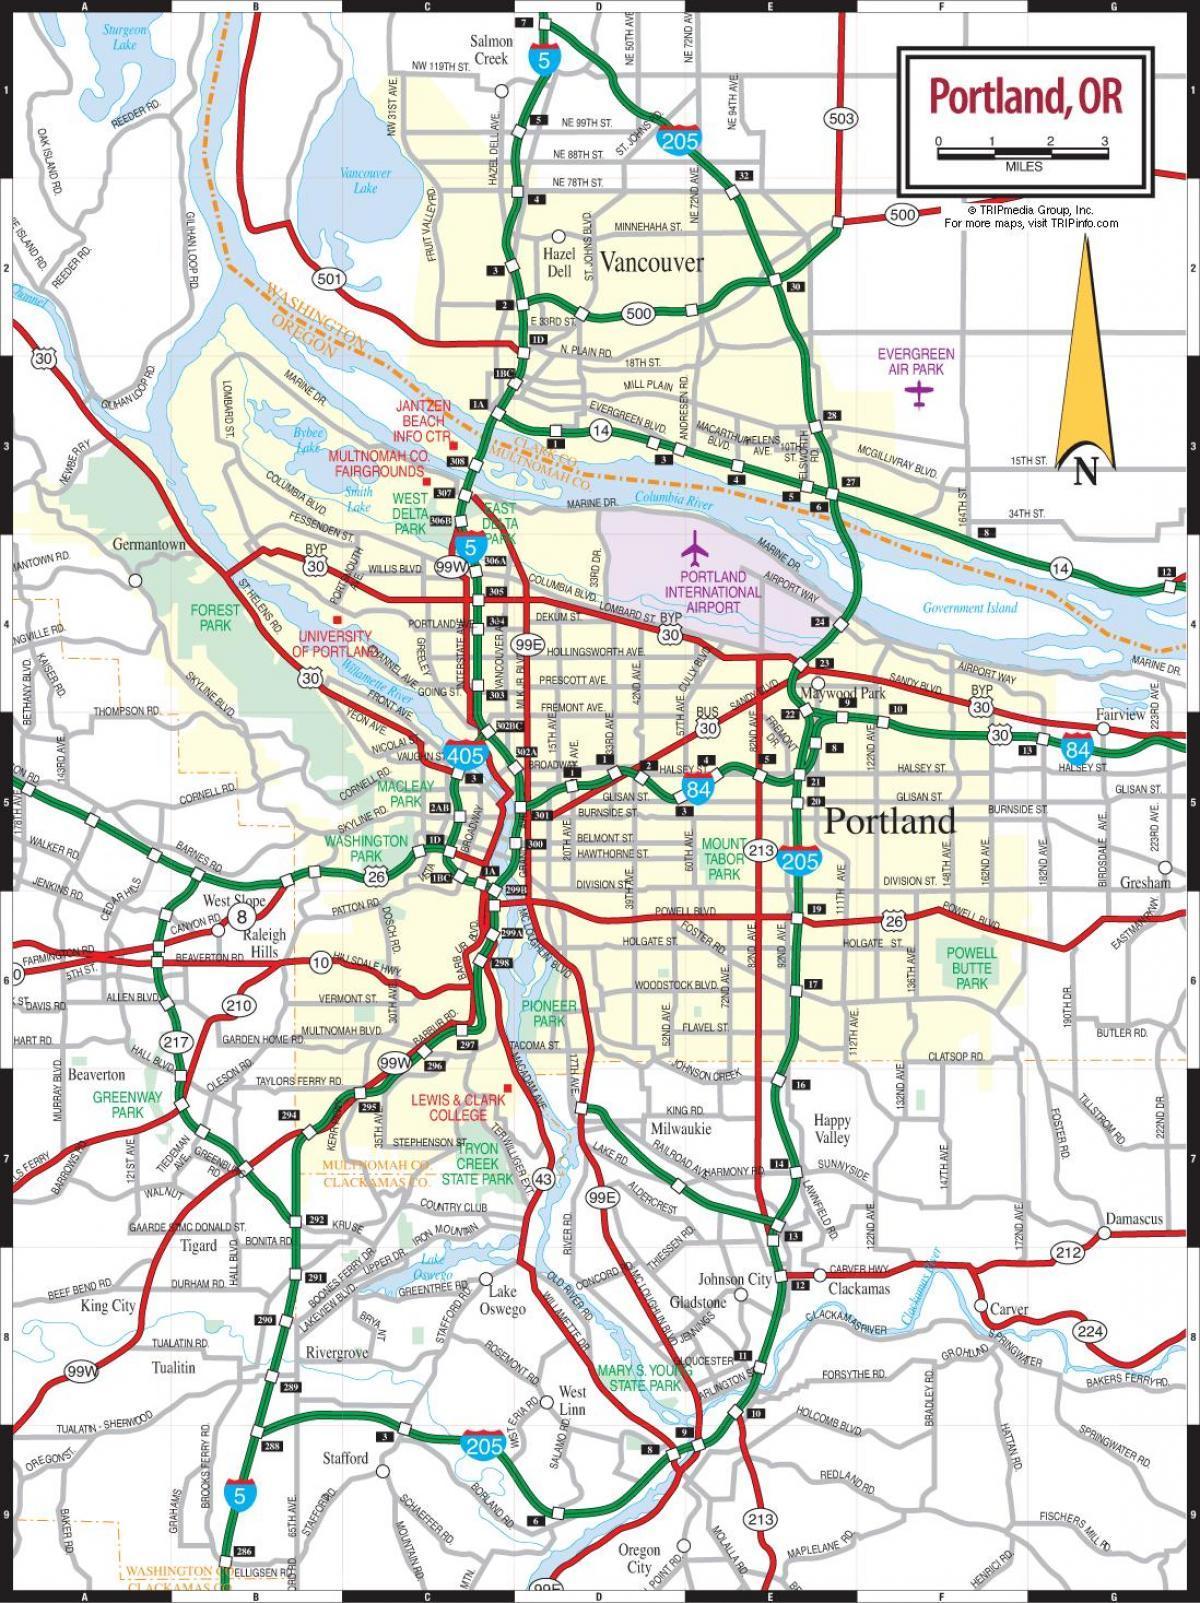 zemljevid Portland metropolitansko območje